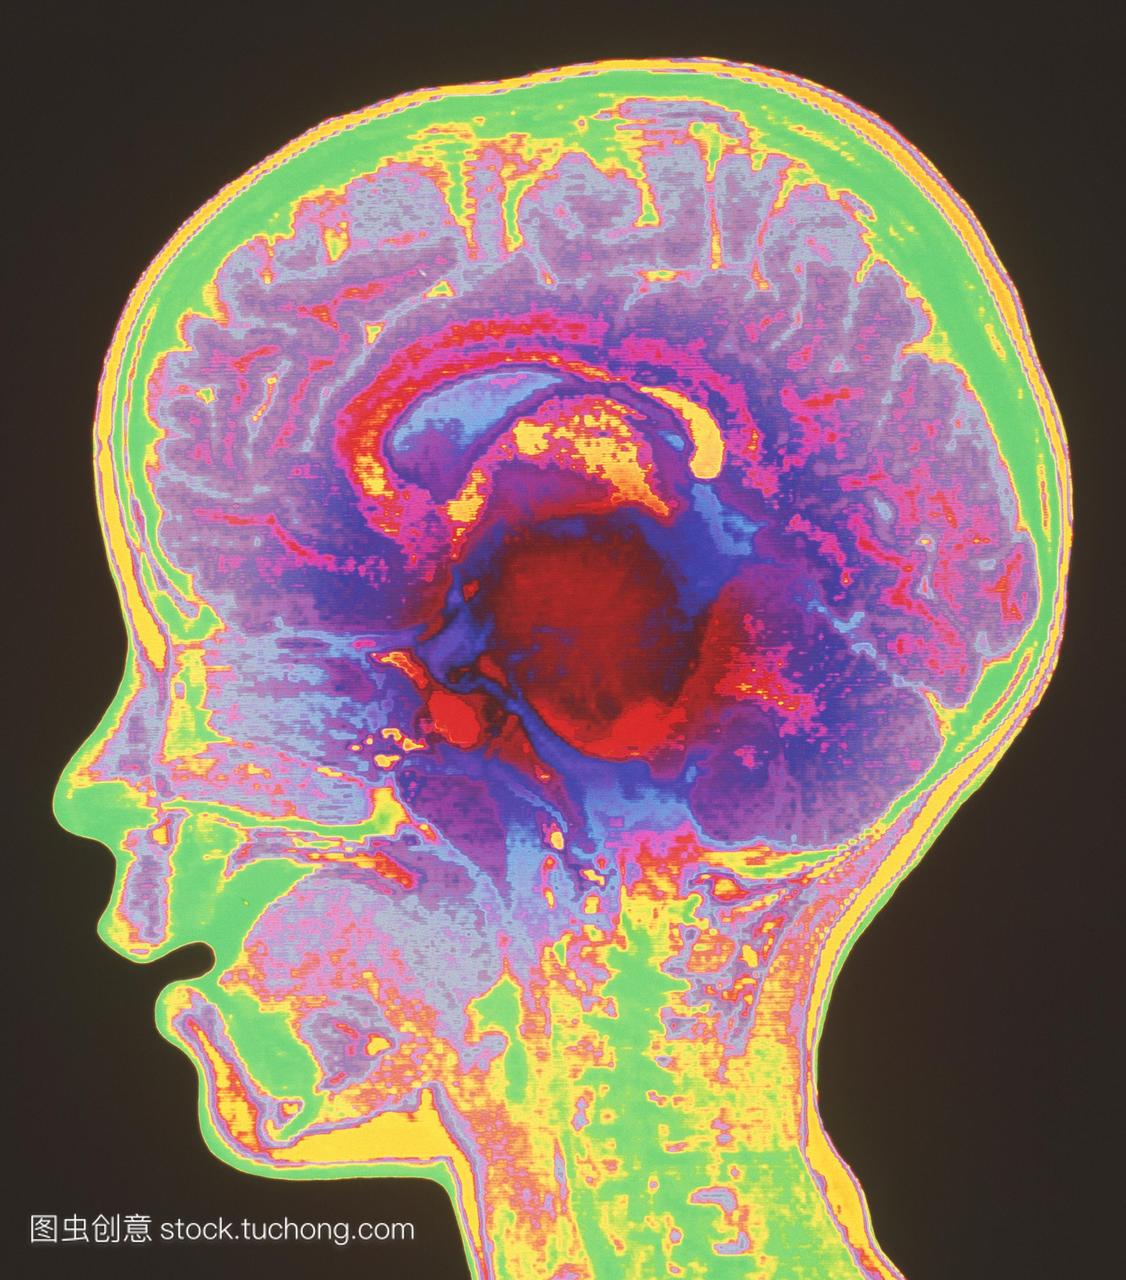 mri扫描矢状面垂直部分,通过脑胶质瘤脑瘤深红